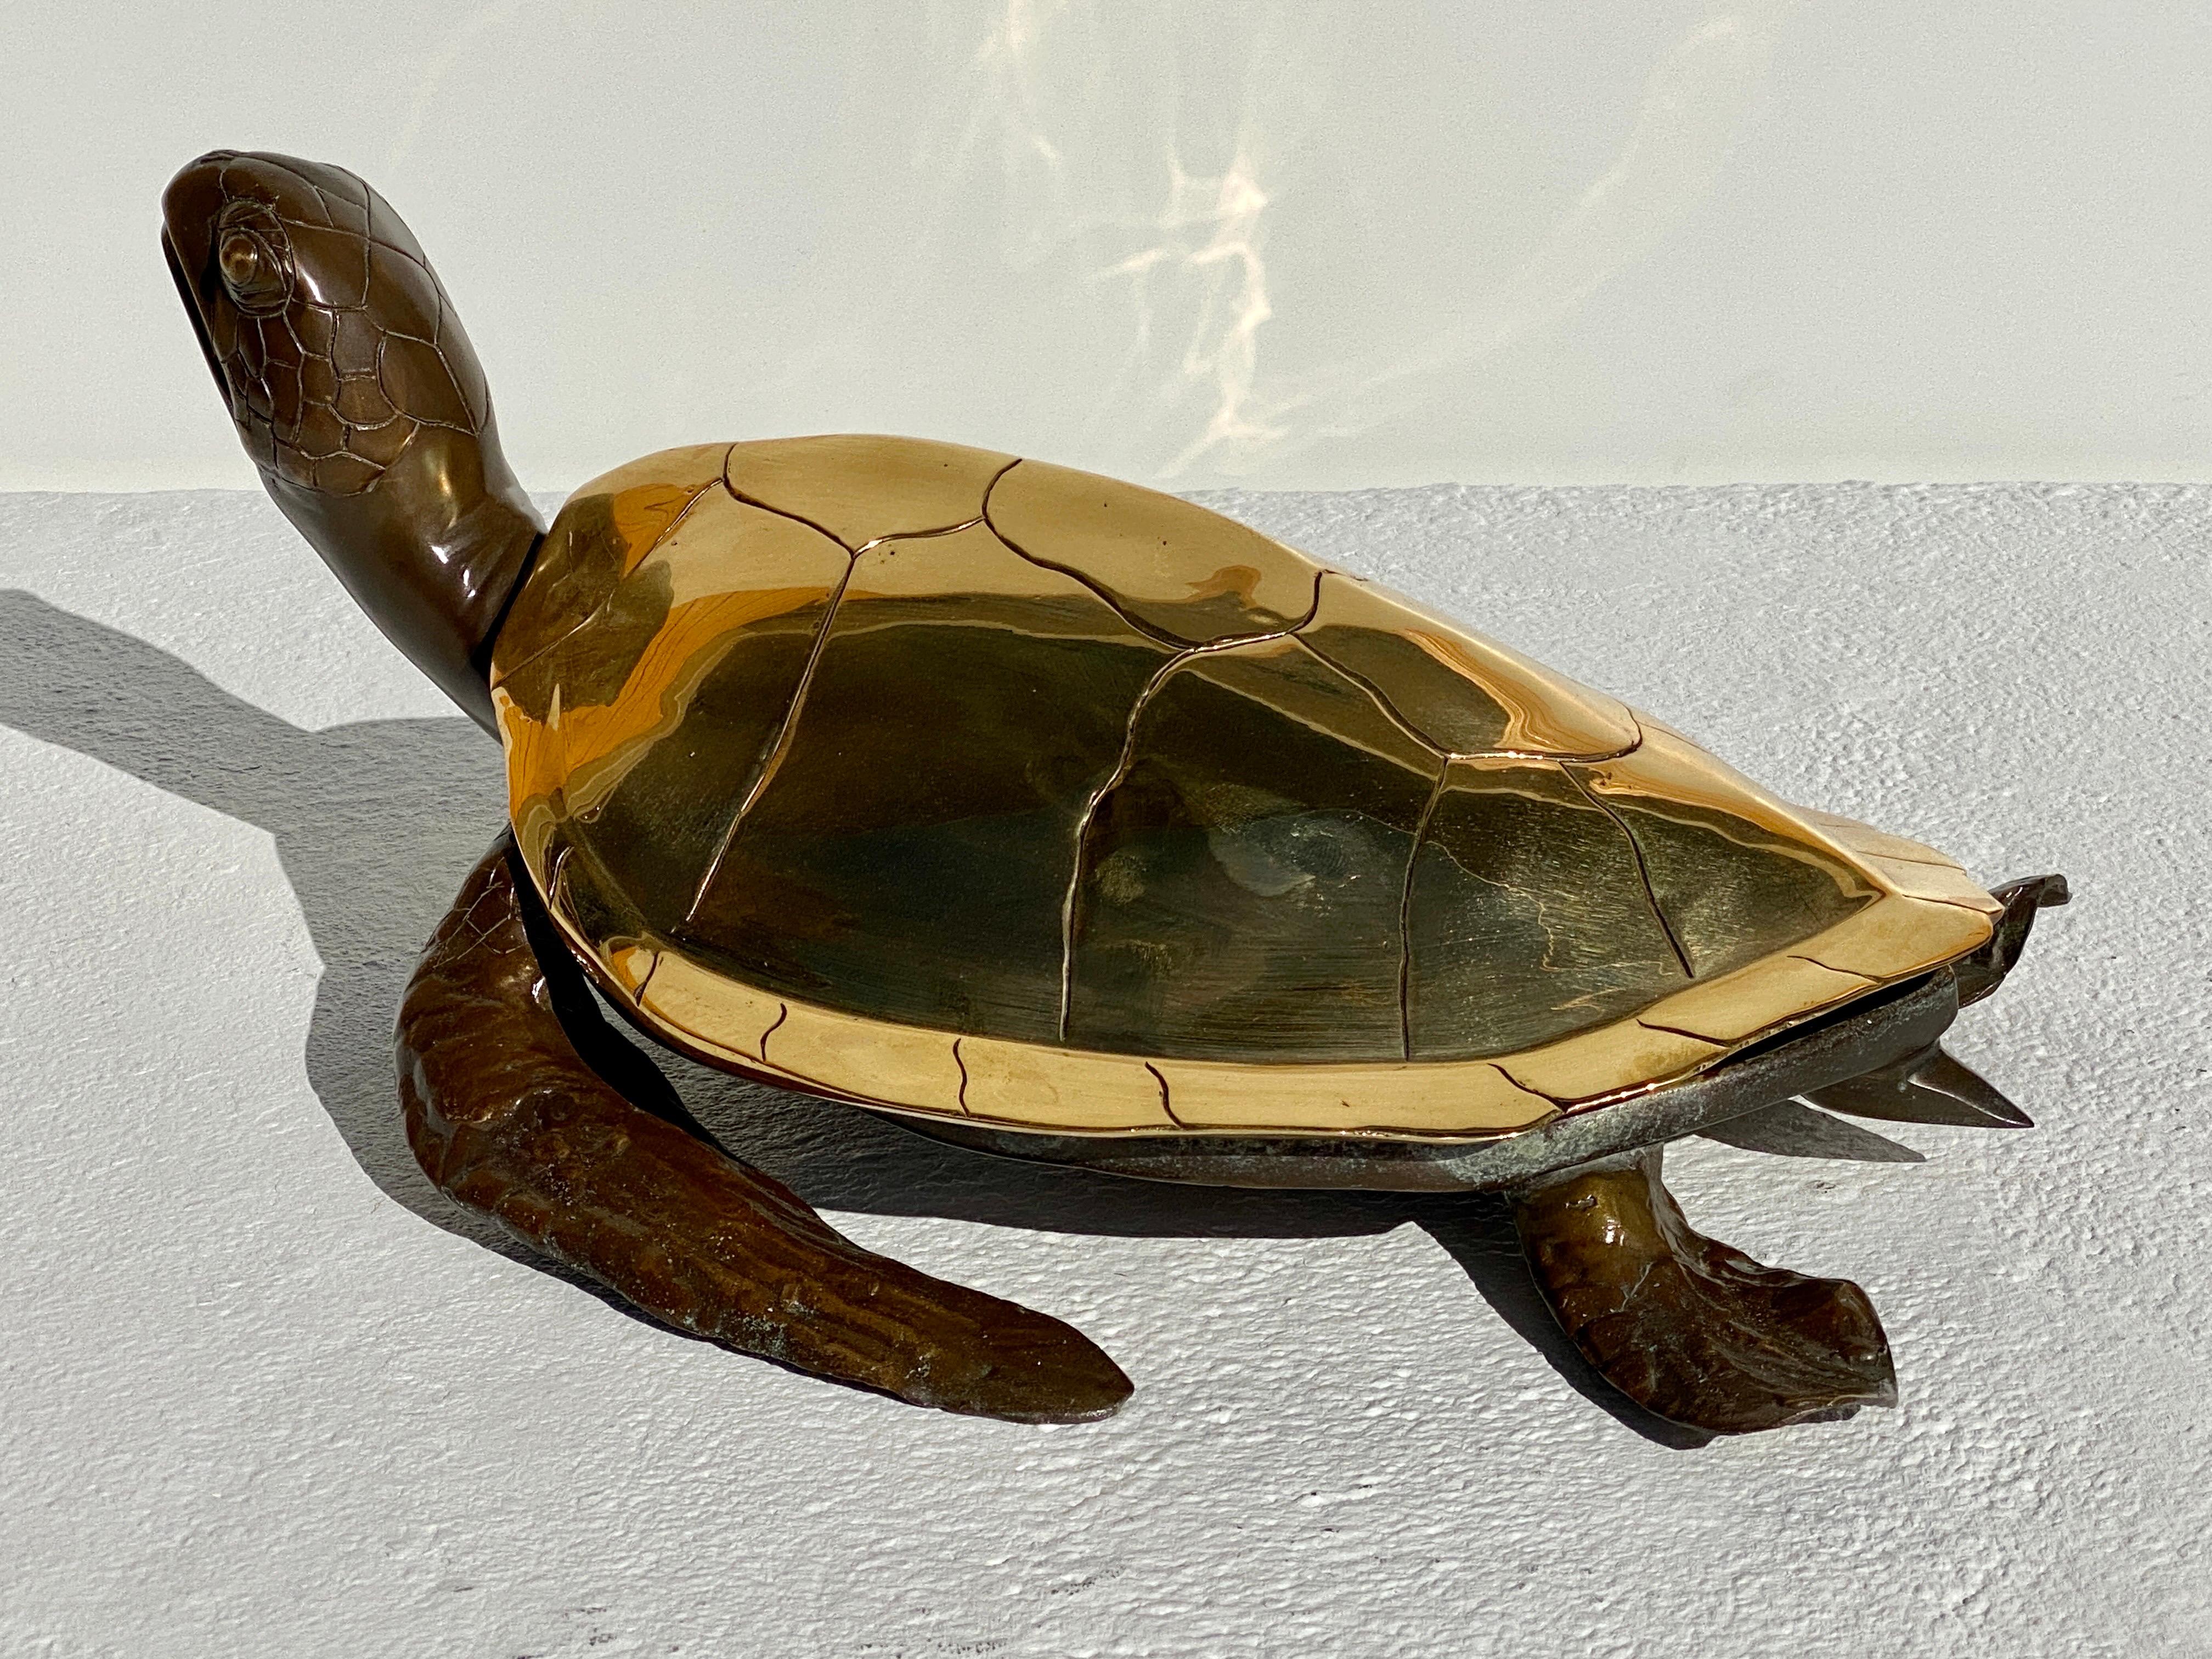 Meeresschildkröten-Skulptur aus Messing / dekorative Dose / Auffangbehälter.
Die Schale ist aus poliertem Messing und der Rest des Körpers ist patiniert. Wir haben auch eine größere Version in unserem anderen Angebot LU985031285462